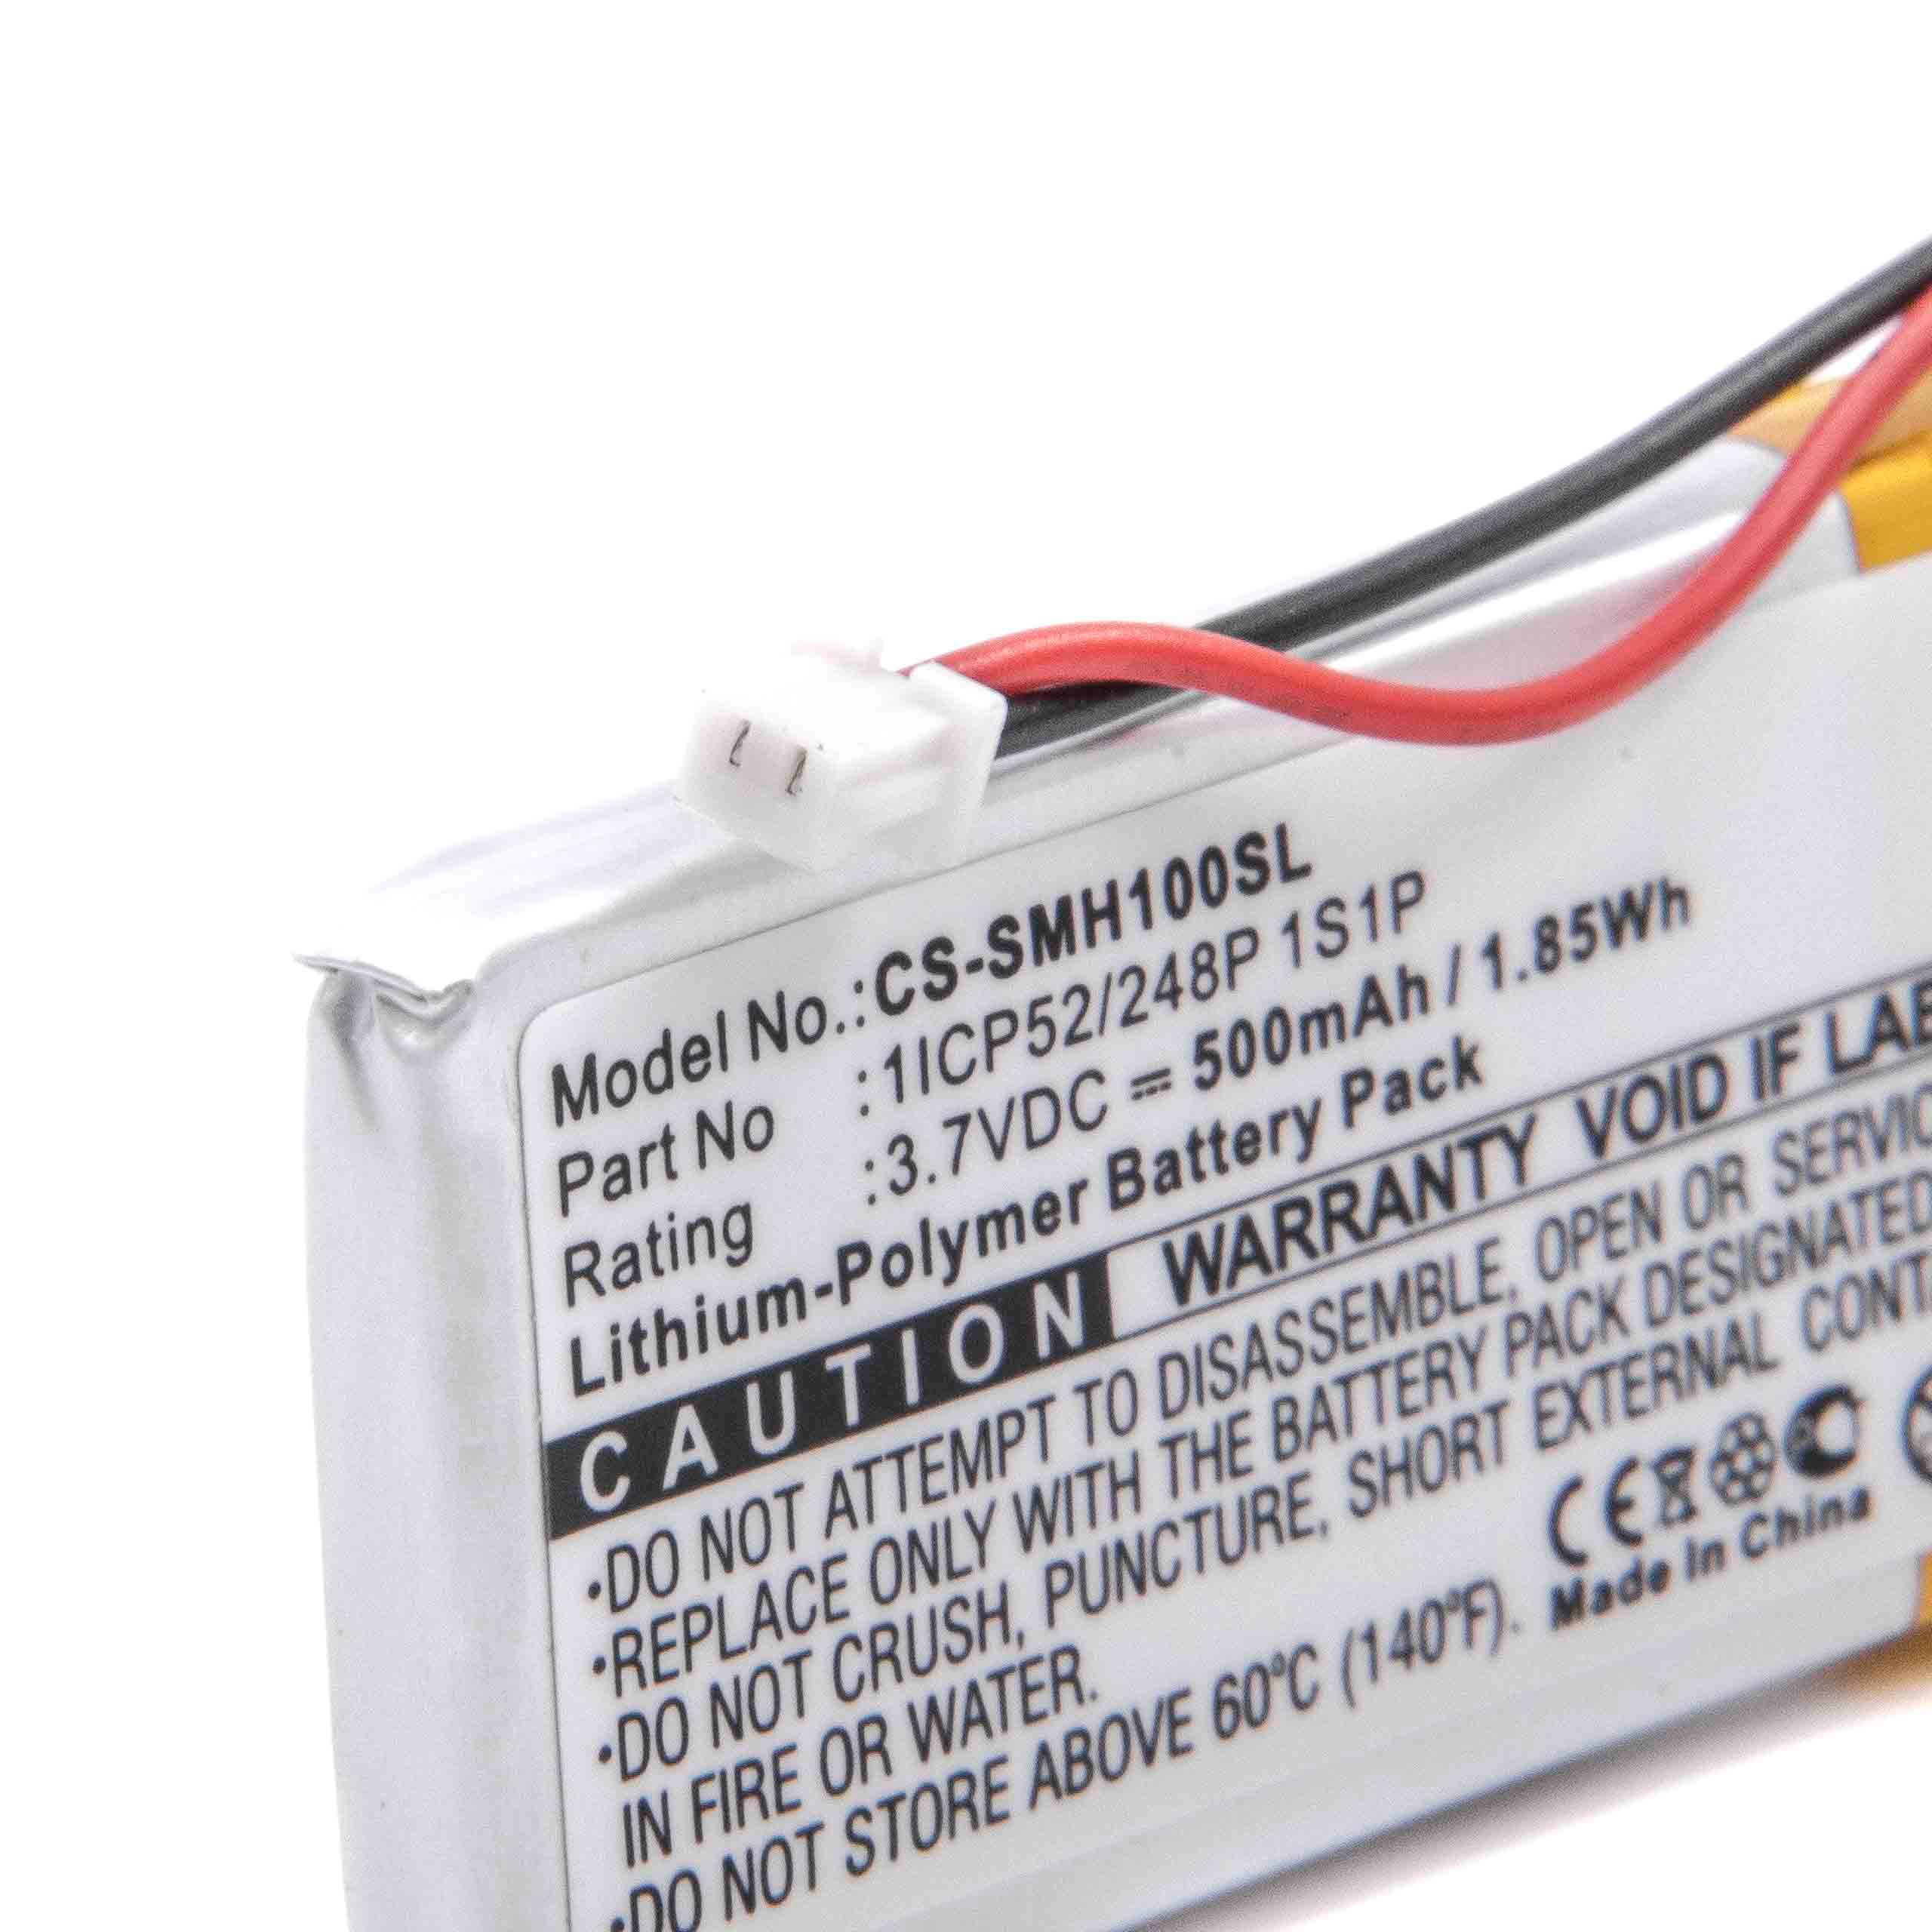 Batterie remplace Sena 1ICP52/248P 1S1P pour casque audio - 500mAh 3,7V Li-polymère